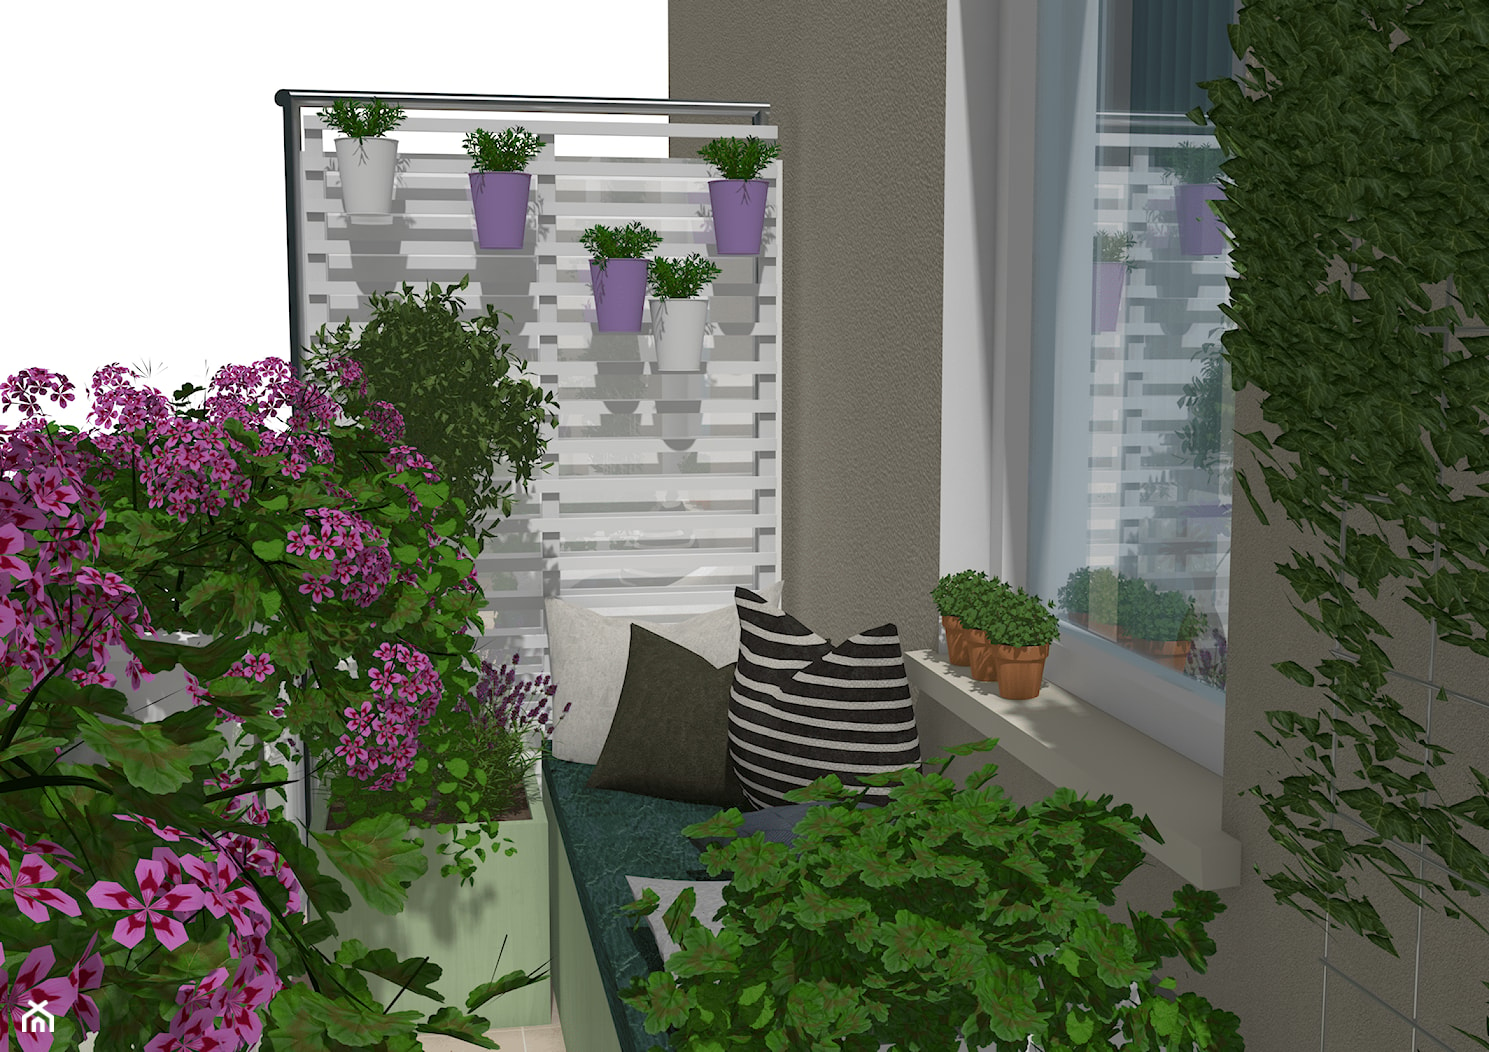 Wąski balkon - Salon, styl skandynawski - zdjęcie od Małe zielone studio - Homebook